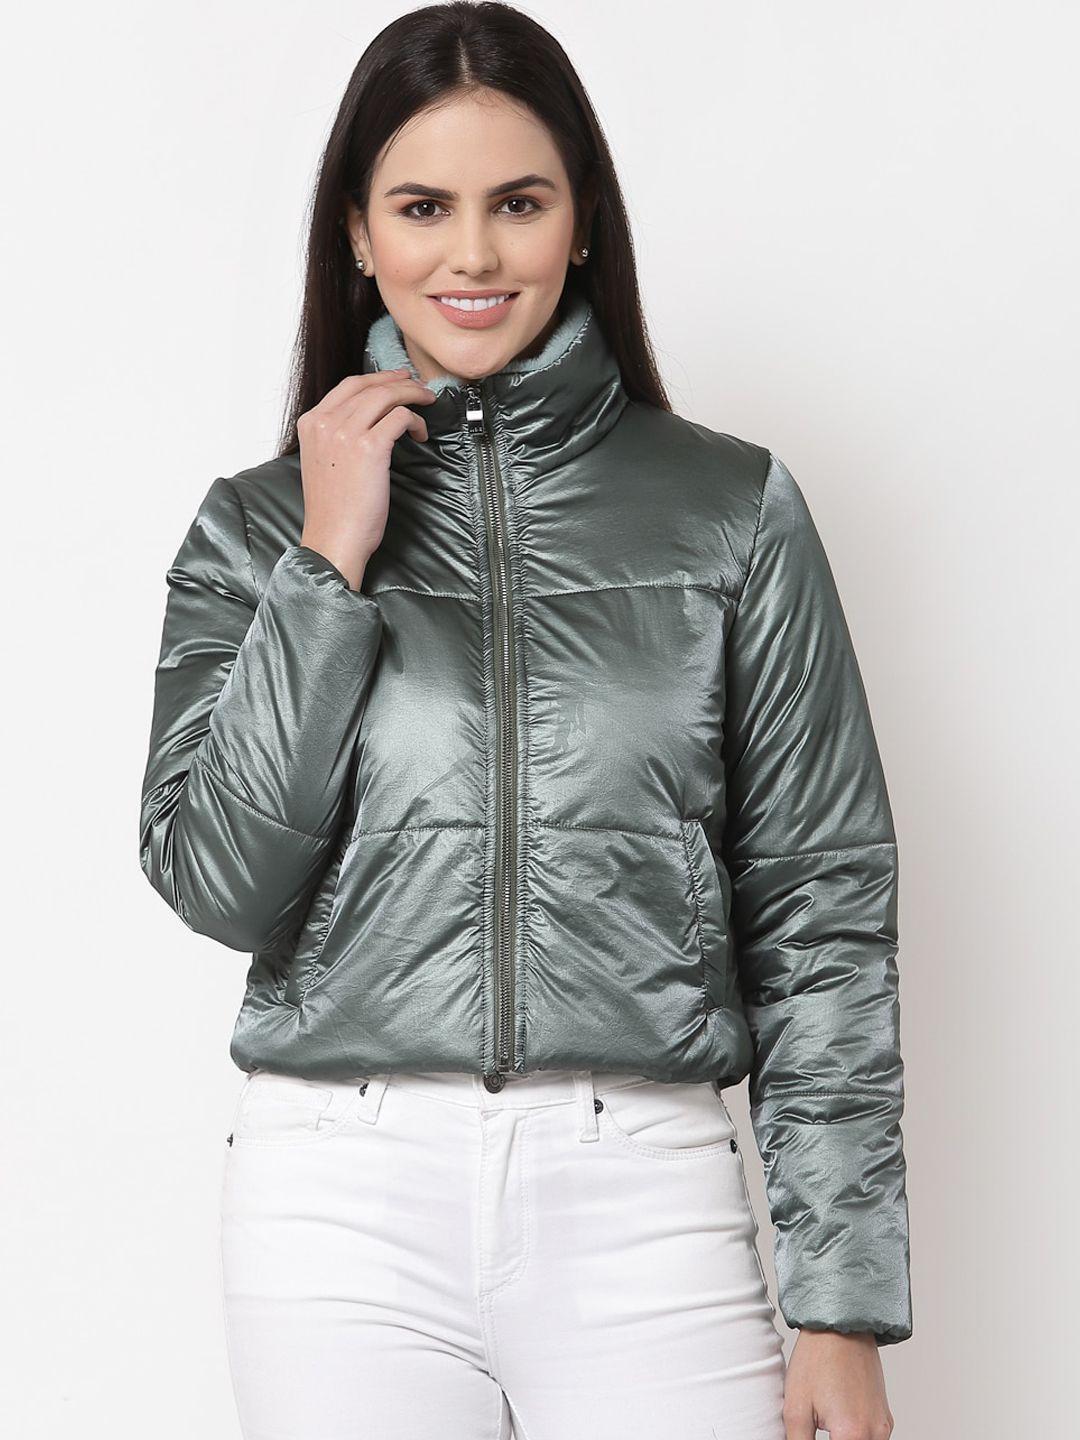 juelle women mock collar nylon crop padded jacket